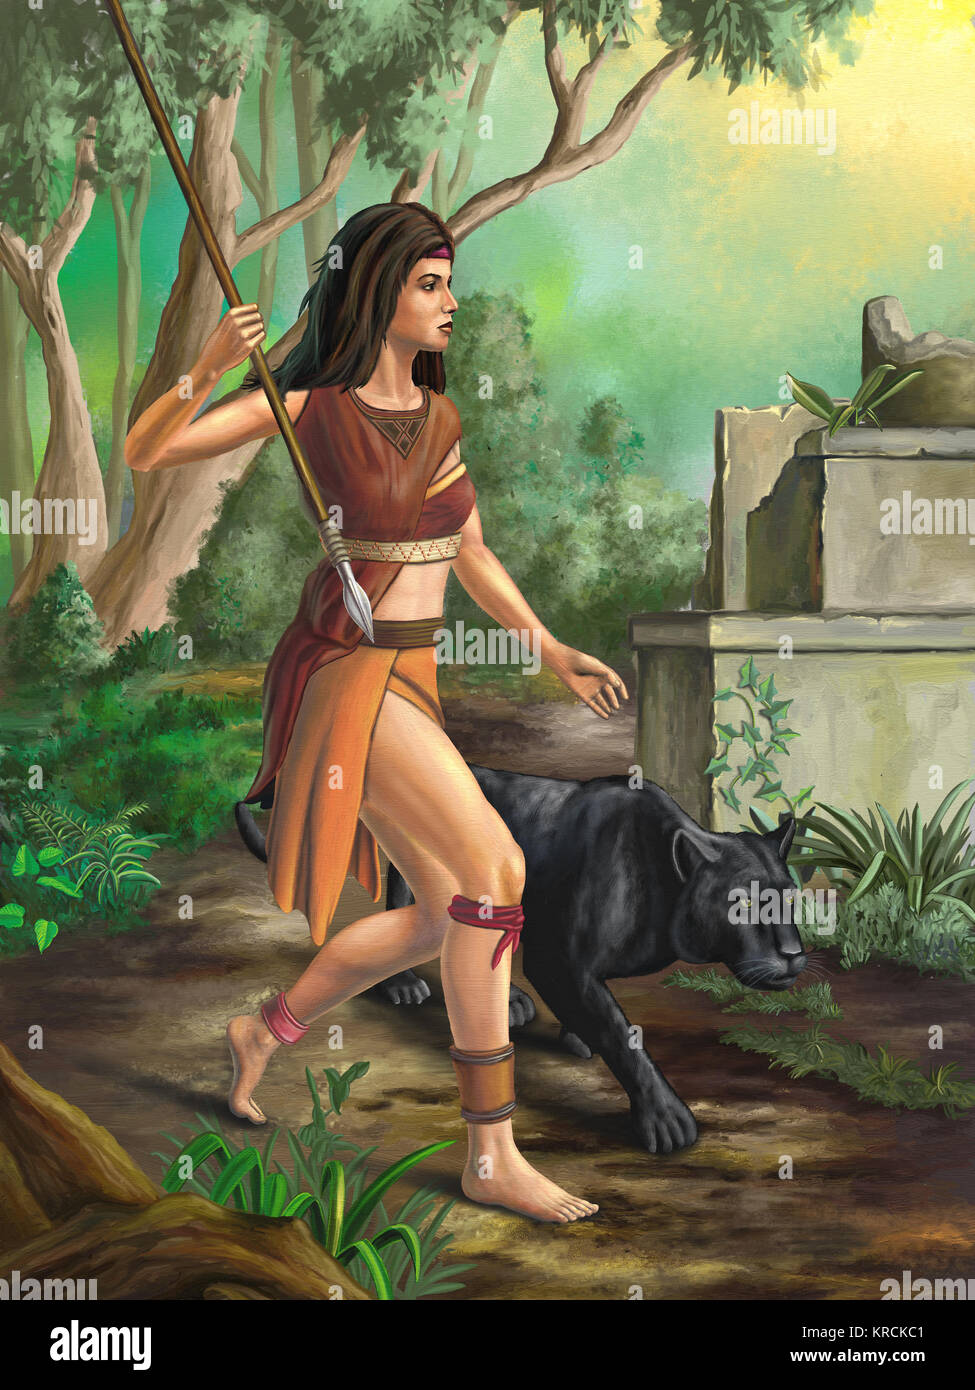 Amazon warrior erkunden den Wald. Digitale Illustration. Stockfoto